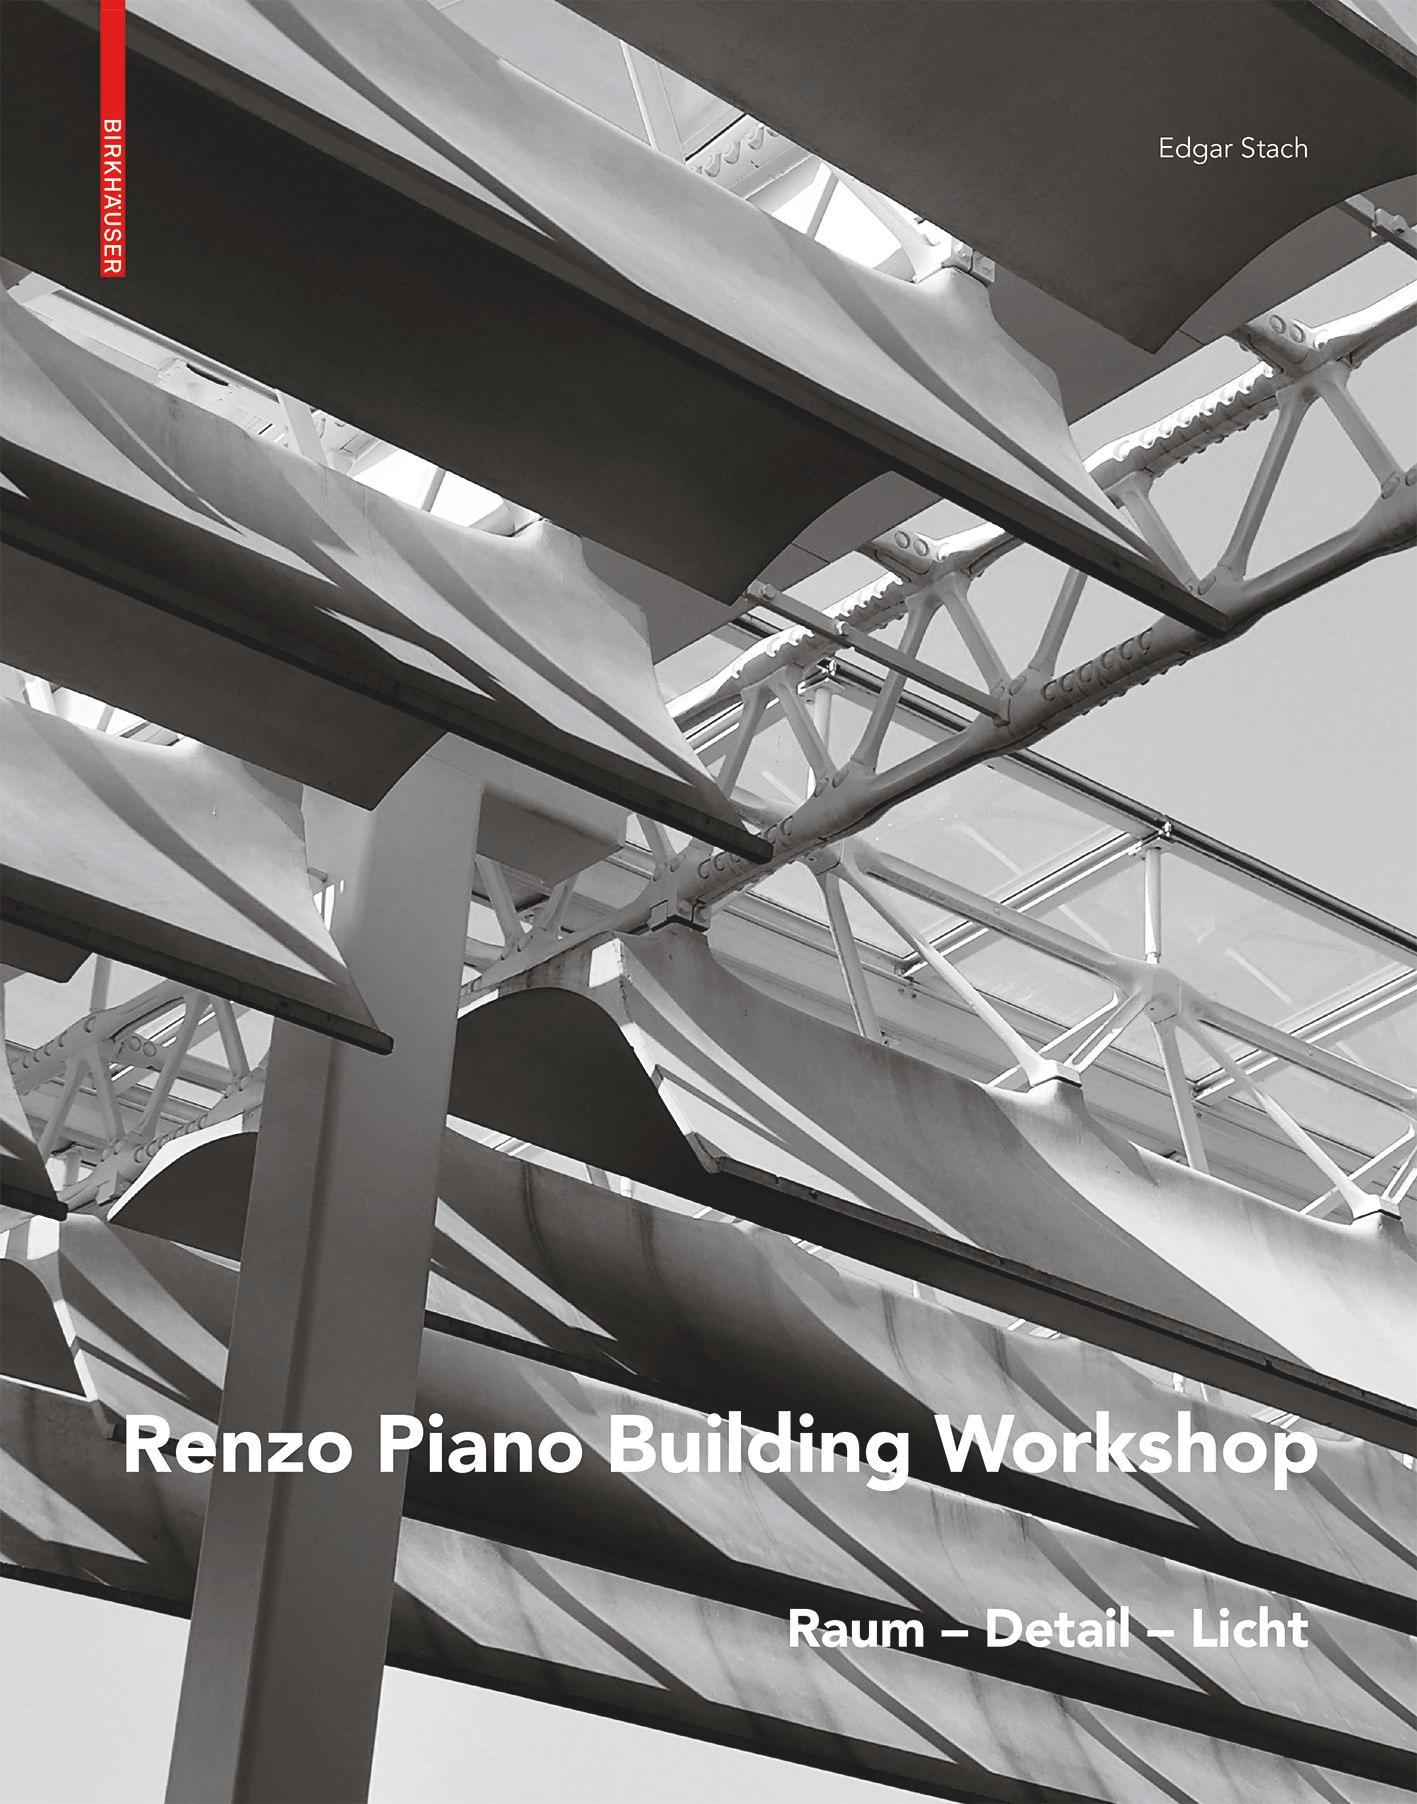 Renzo Piano's cover